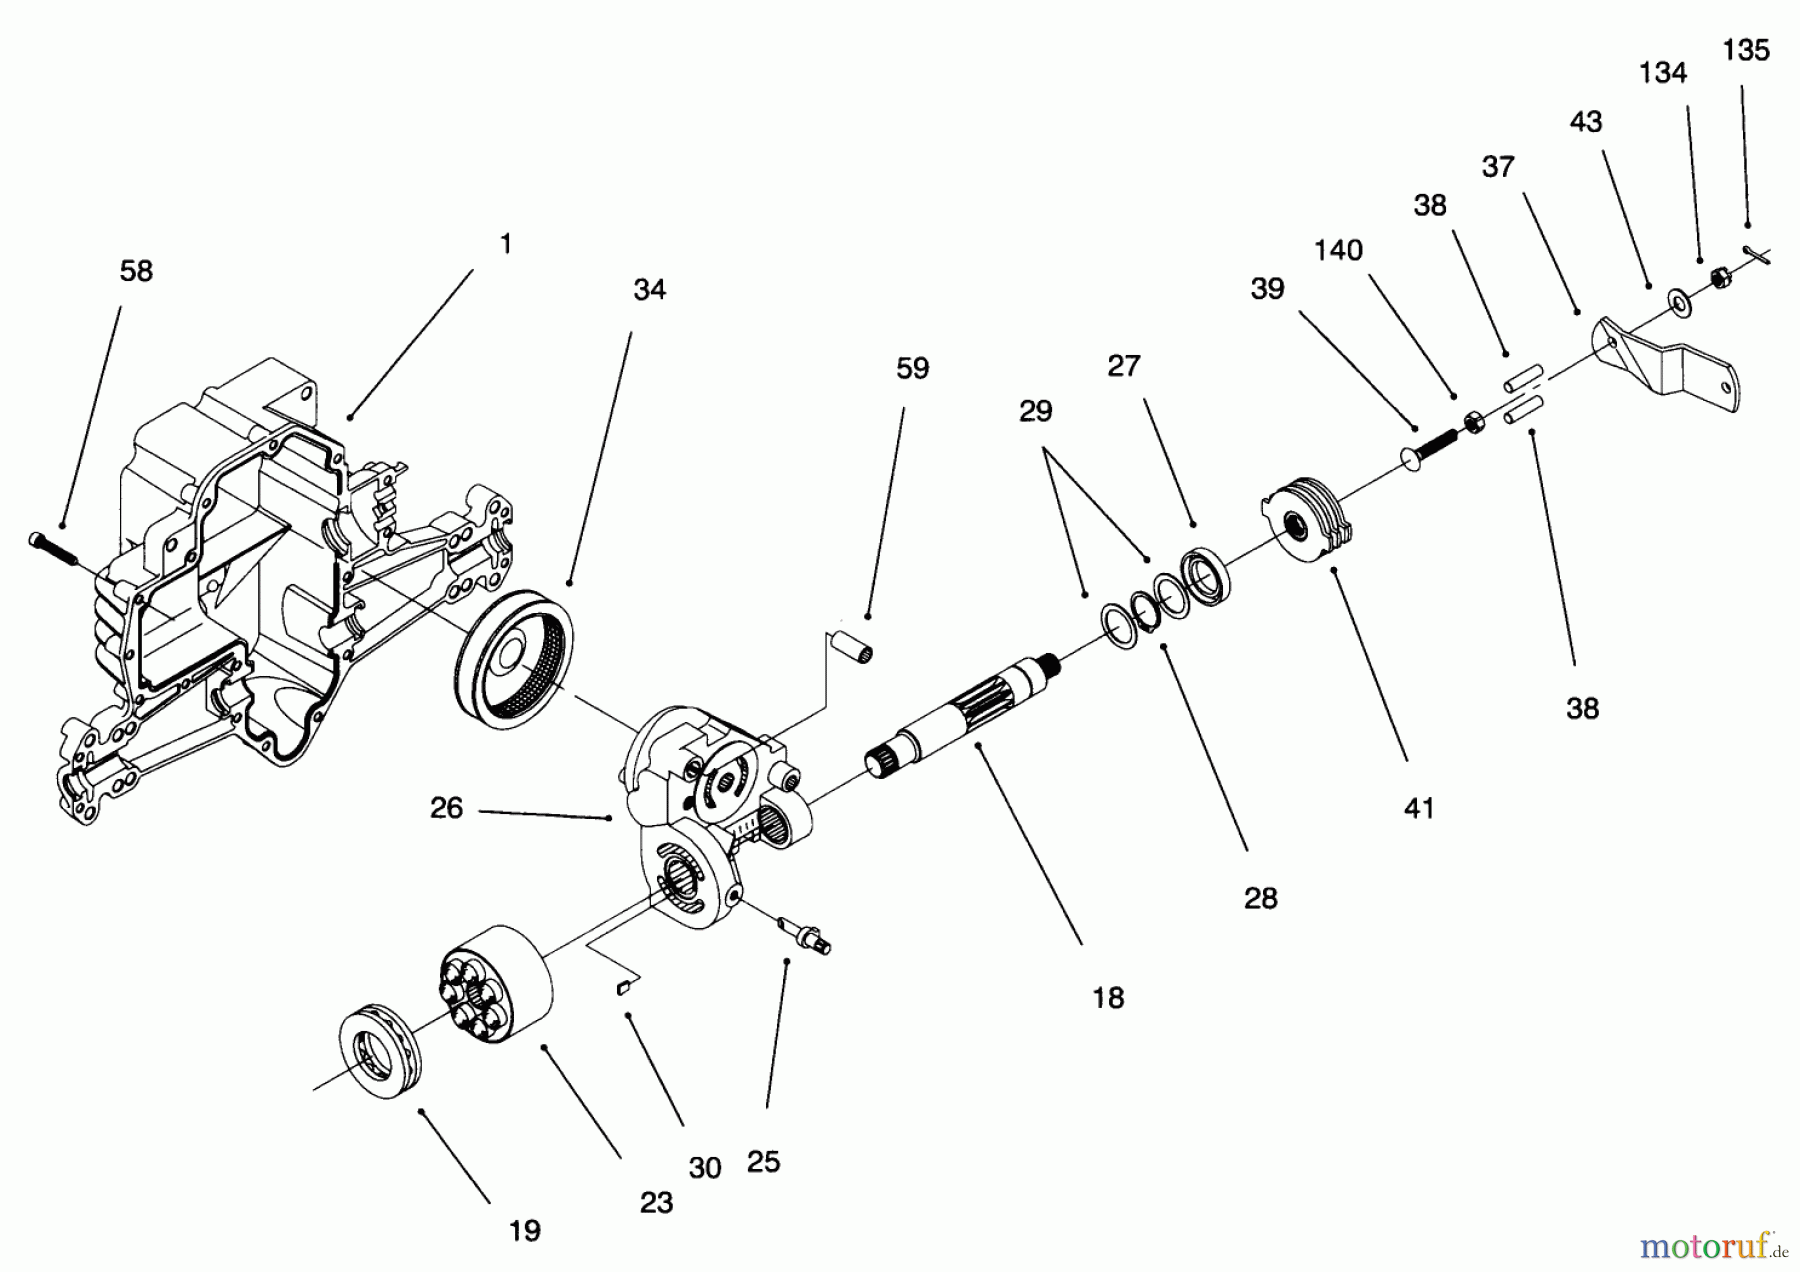  Toro Neu Mowers, Lawn & Garden Tractor Seite 1 71193 (14-38HXL) - Toro 14-38HXL Lawn Tractor, 1996 (6900001-6999999) HYDRO TRANSAXLE ASSEMBLY #4